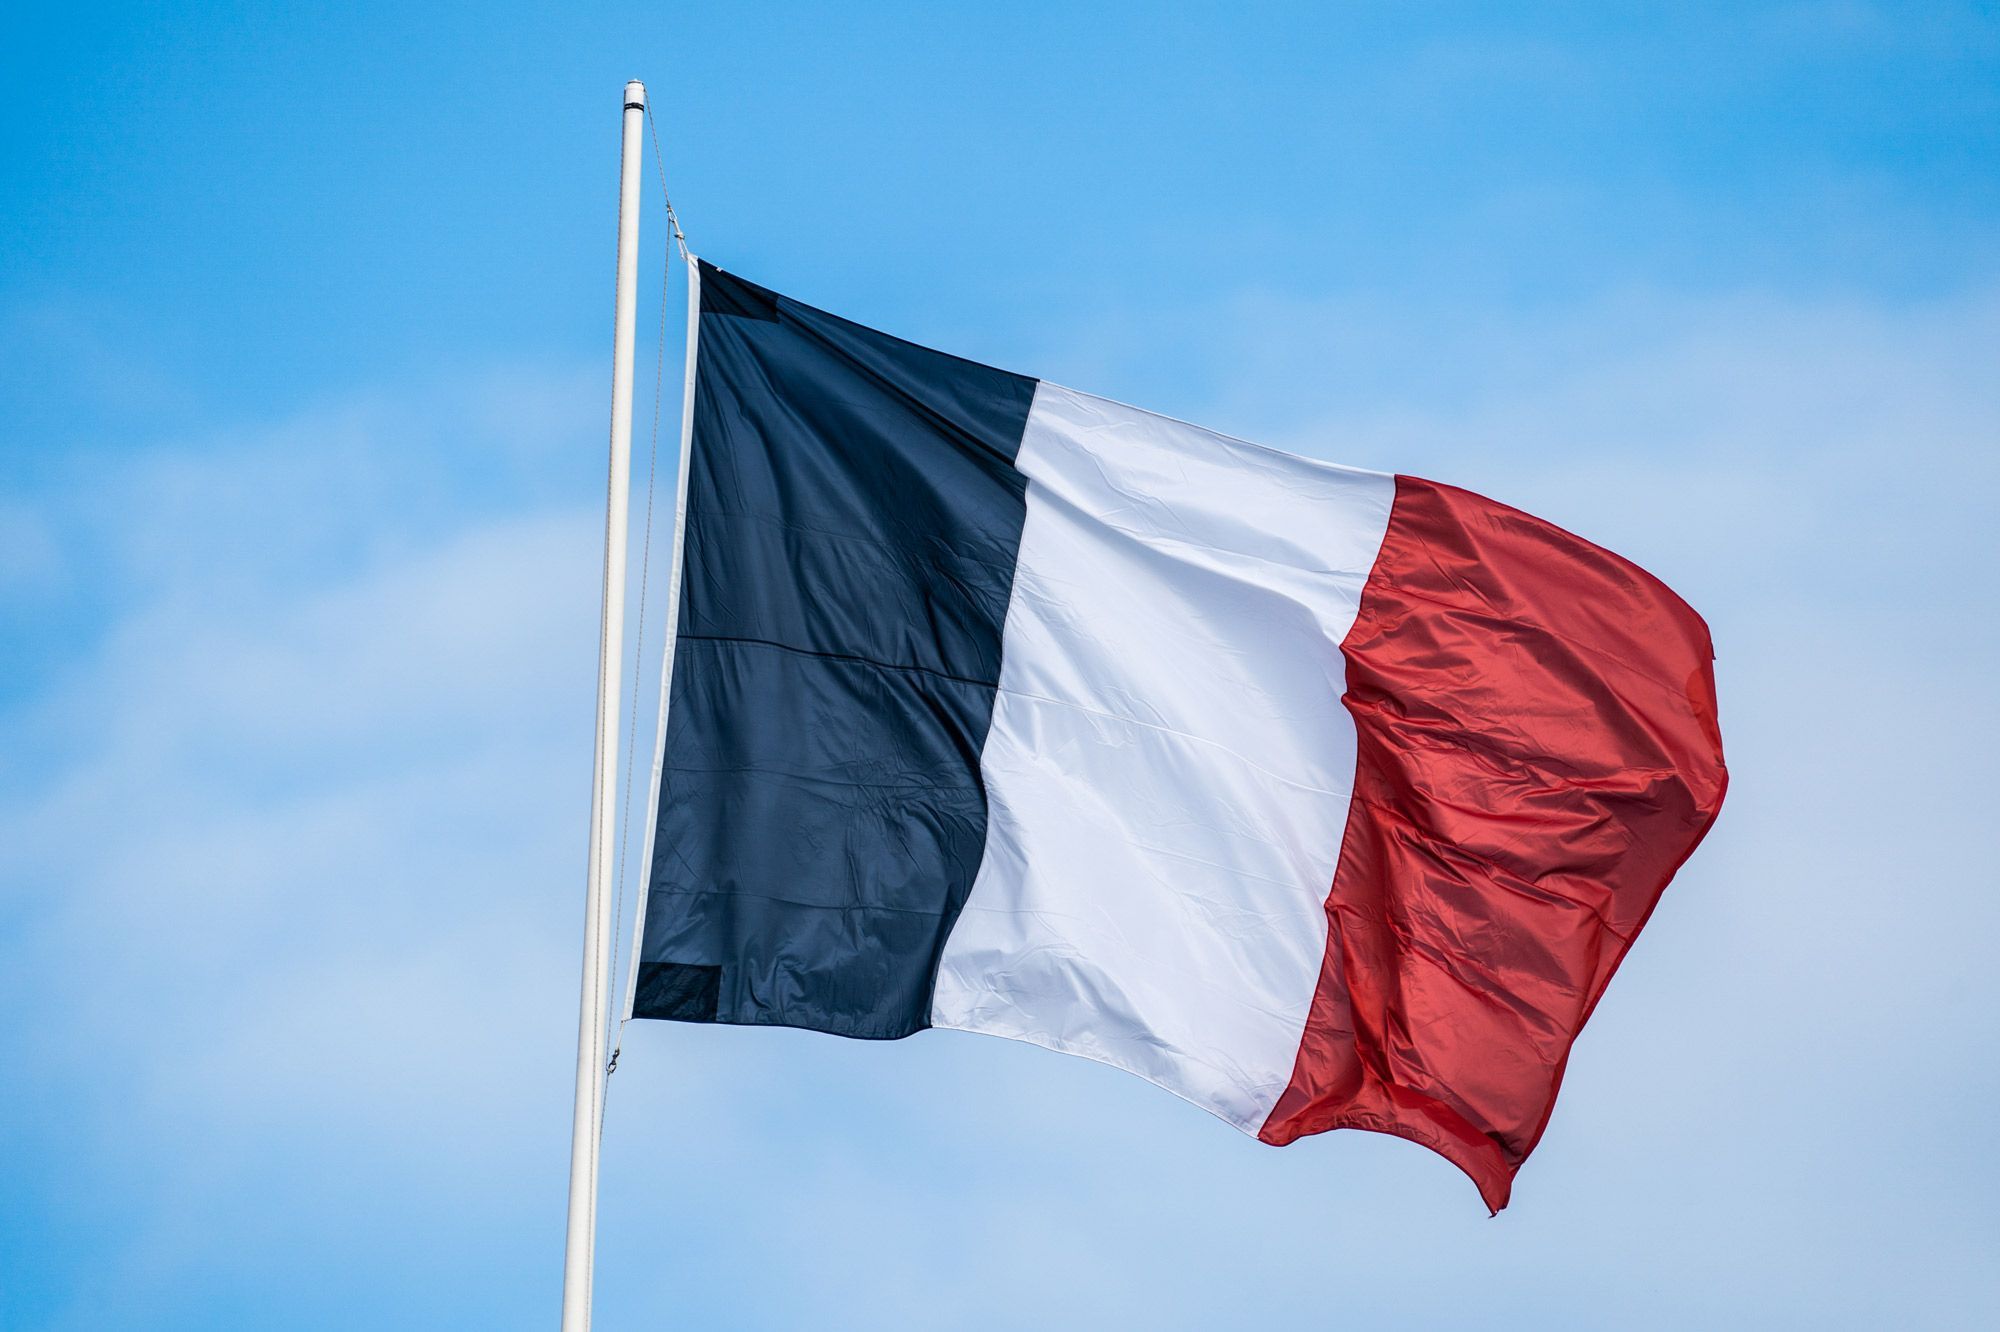 En quelle année, le drapeau Bleu, Blanc, Rouge est-il adopté comme drapeau de la France pour la première fois ? 